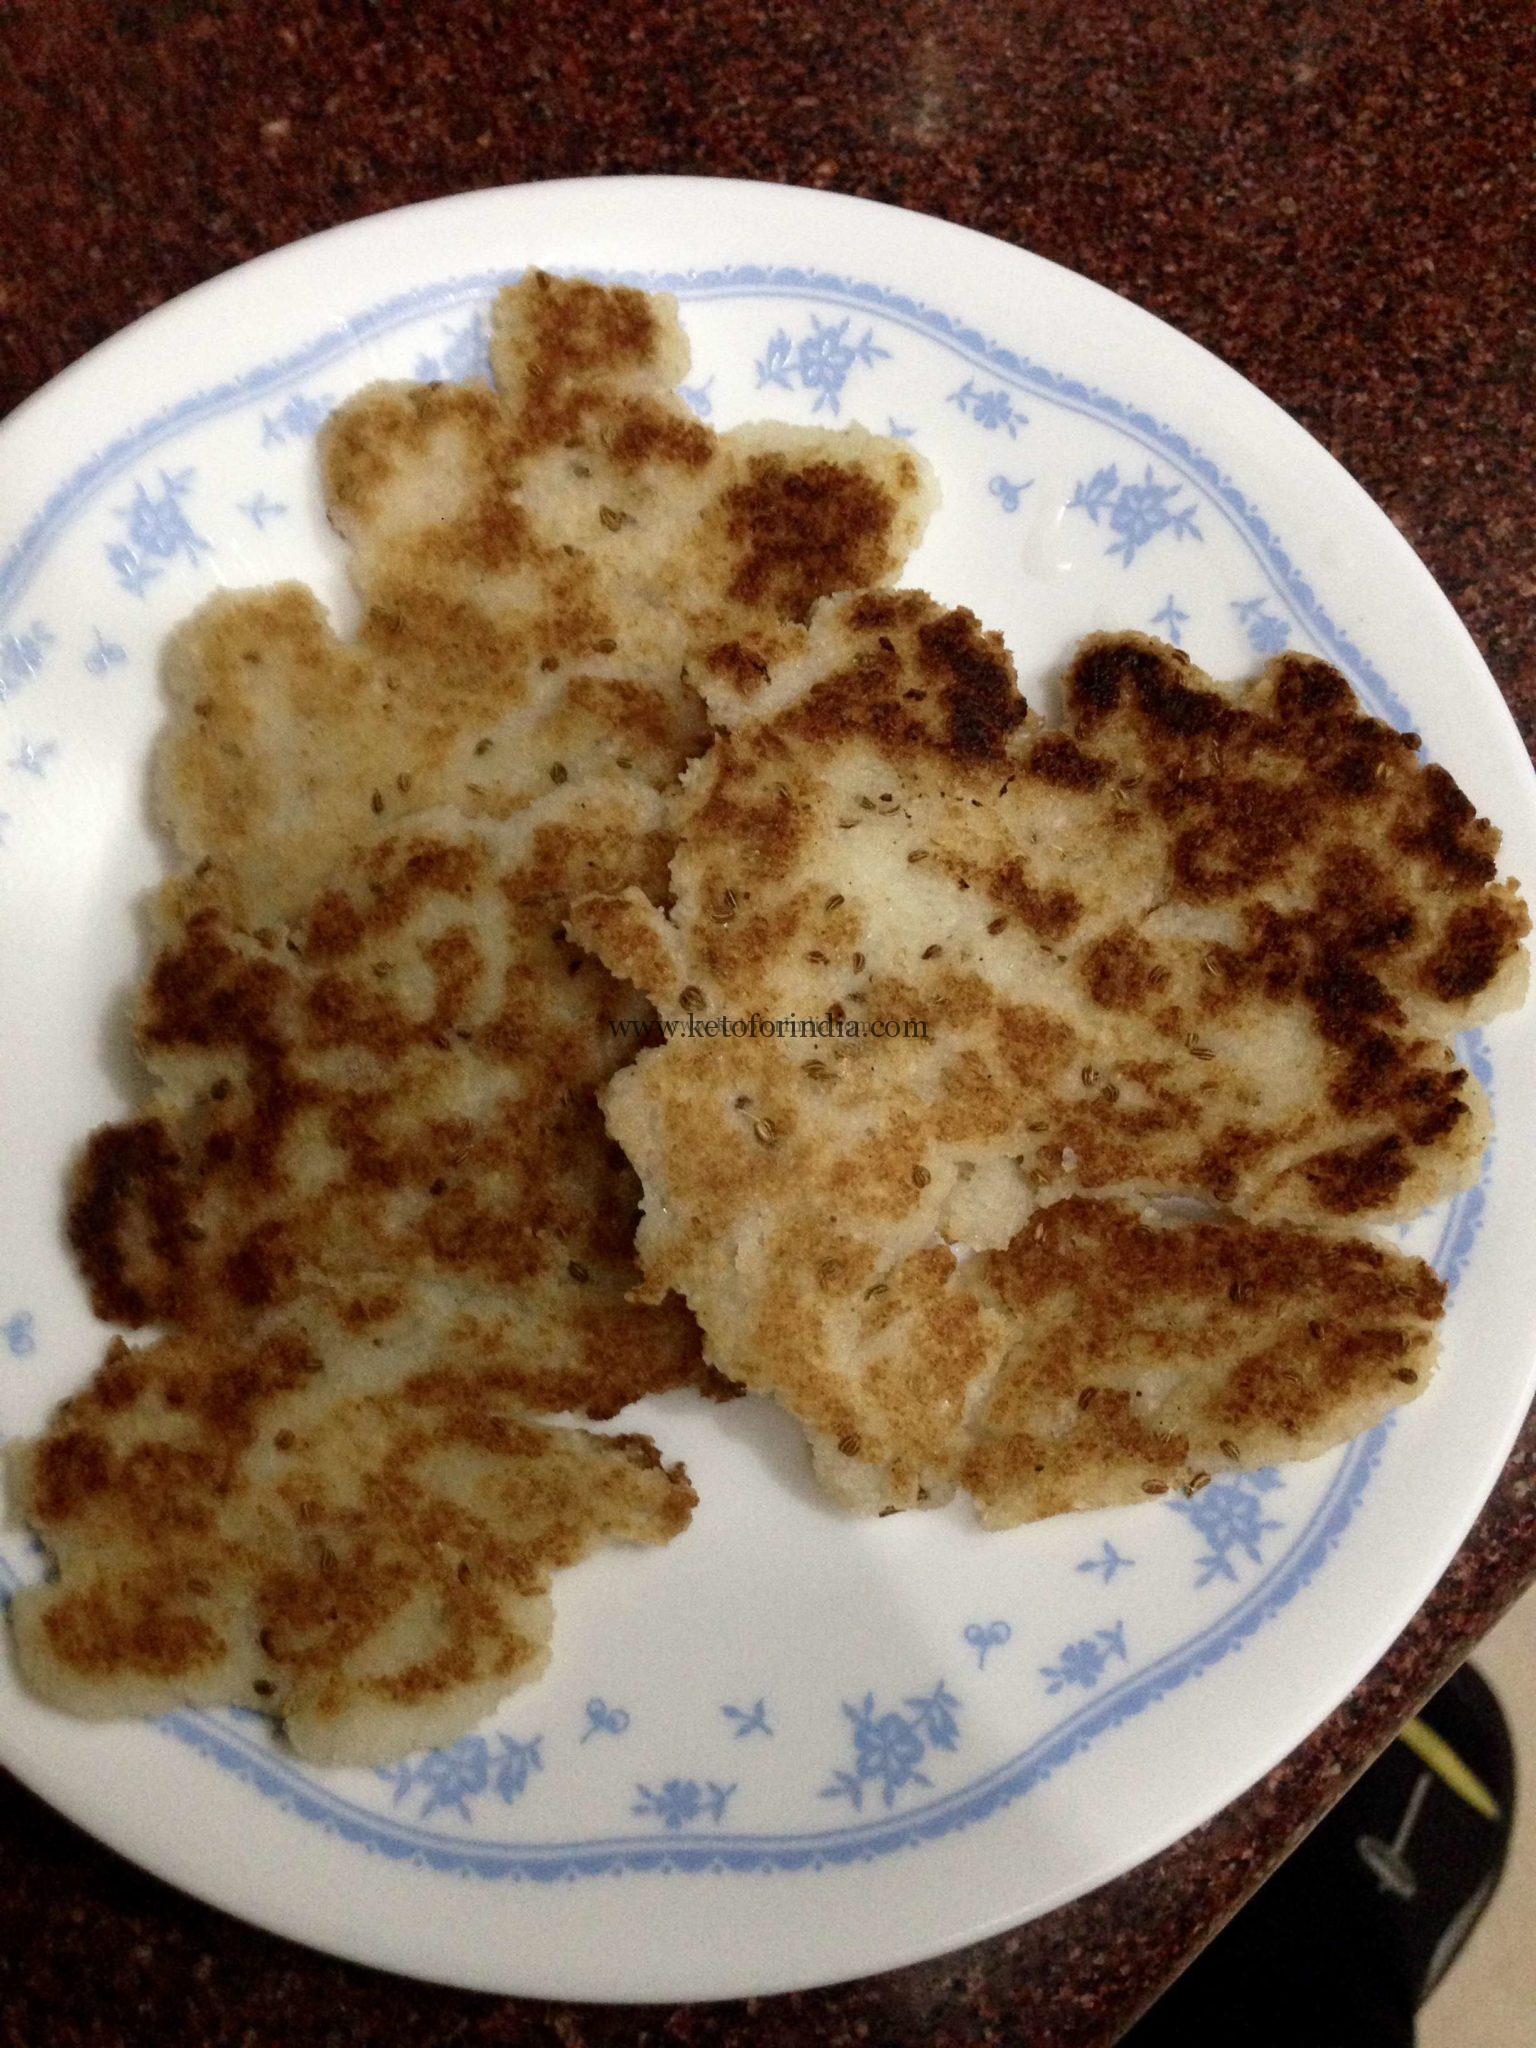 Priya’s Low-Carb Keto Chapati or Keto Roti/Pita Bread